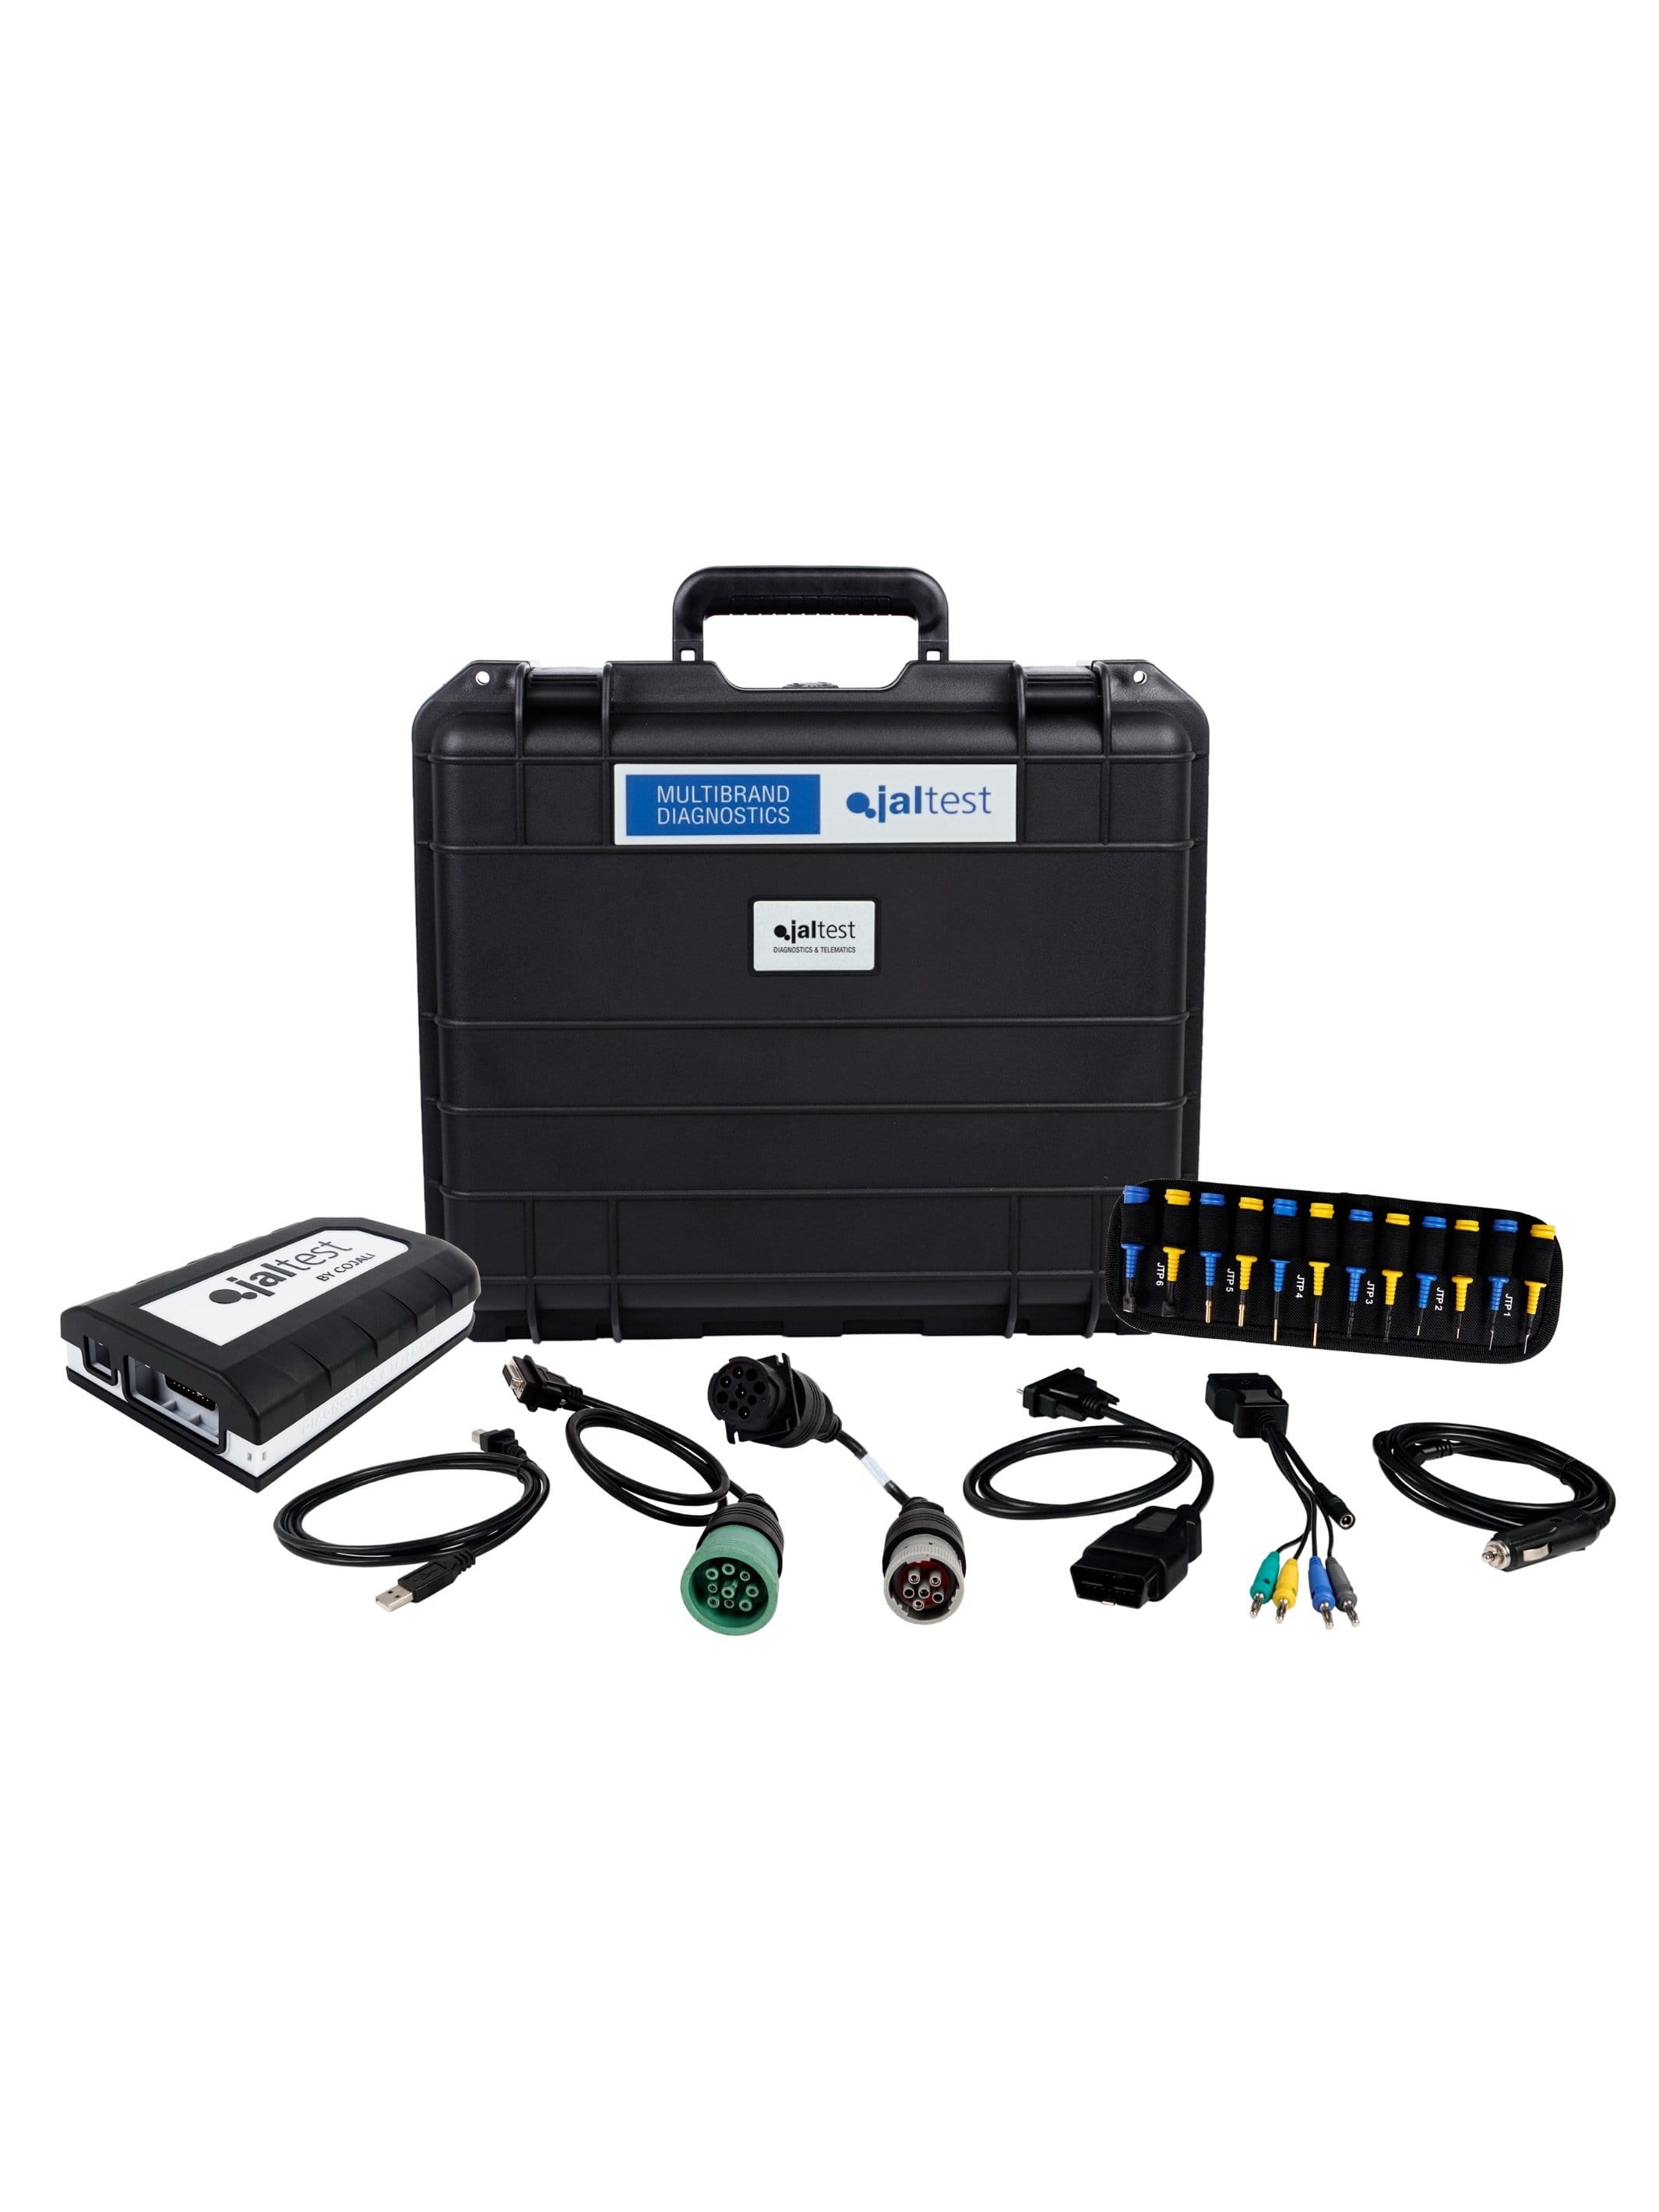 Jaltest Diagnostic Computer Commercial Vehicle, Construction & Agriculture Equipment Kit